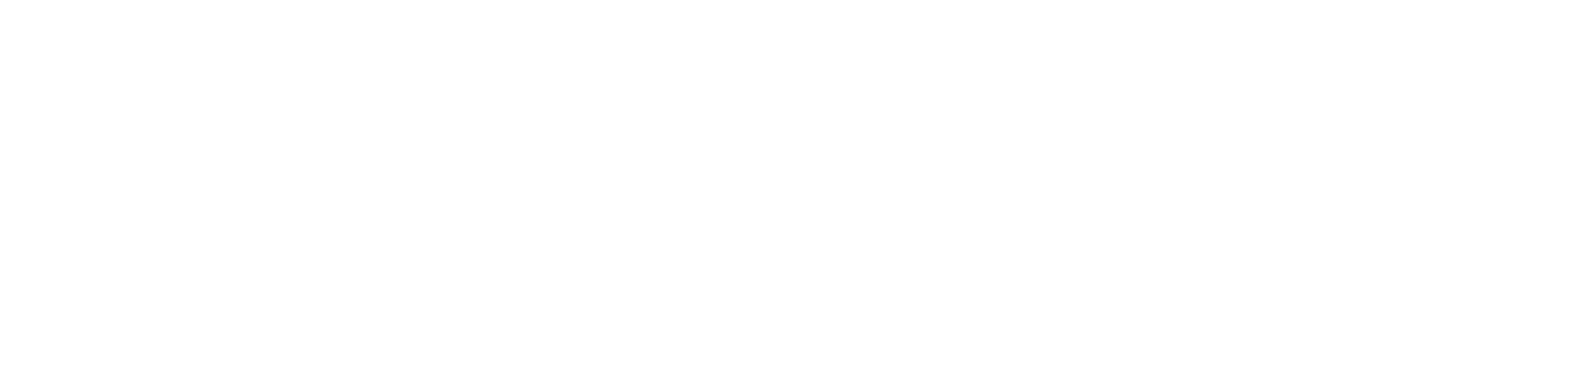 Nokia Logo groß für dunkle Hintergründe (transparentes PNG)